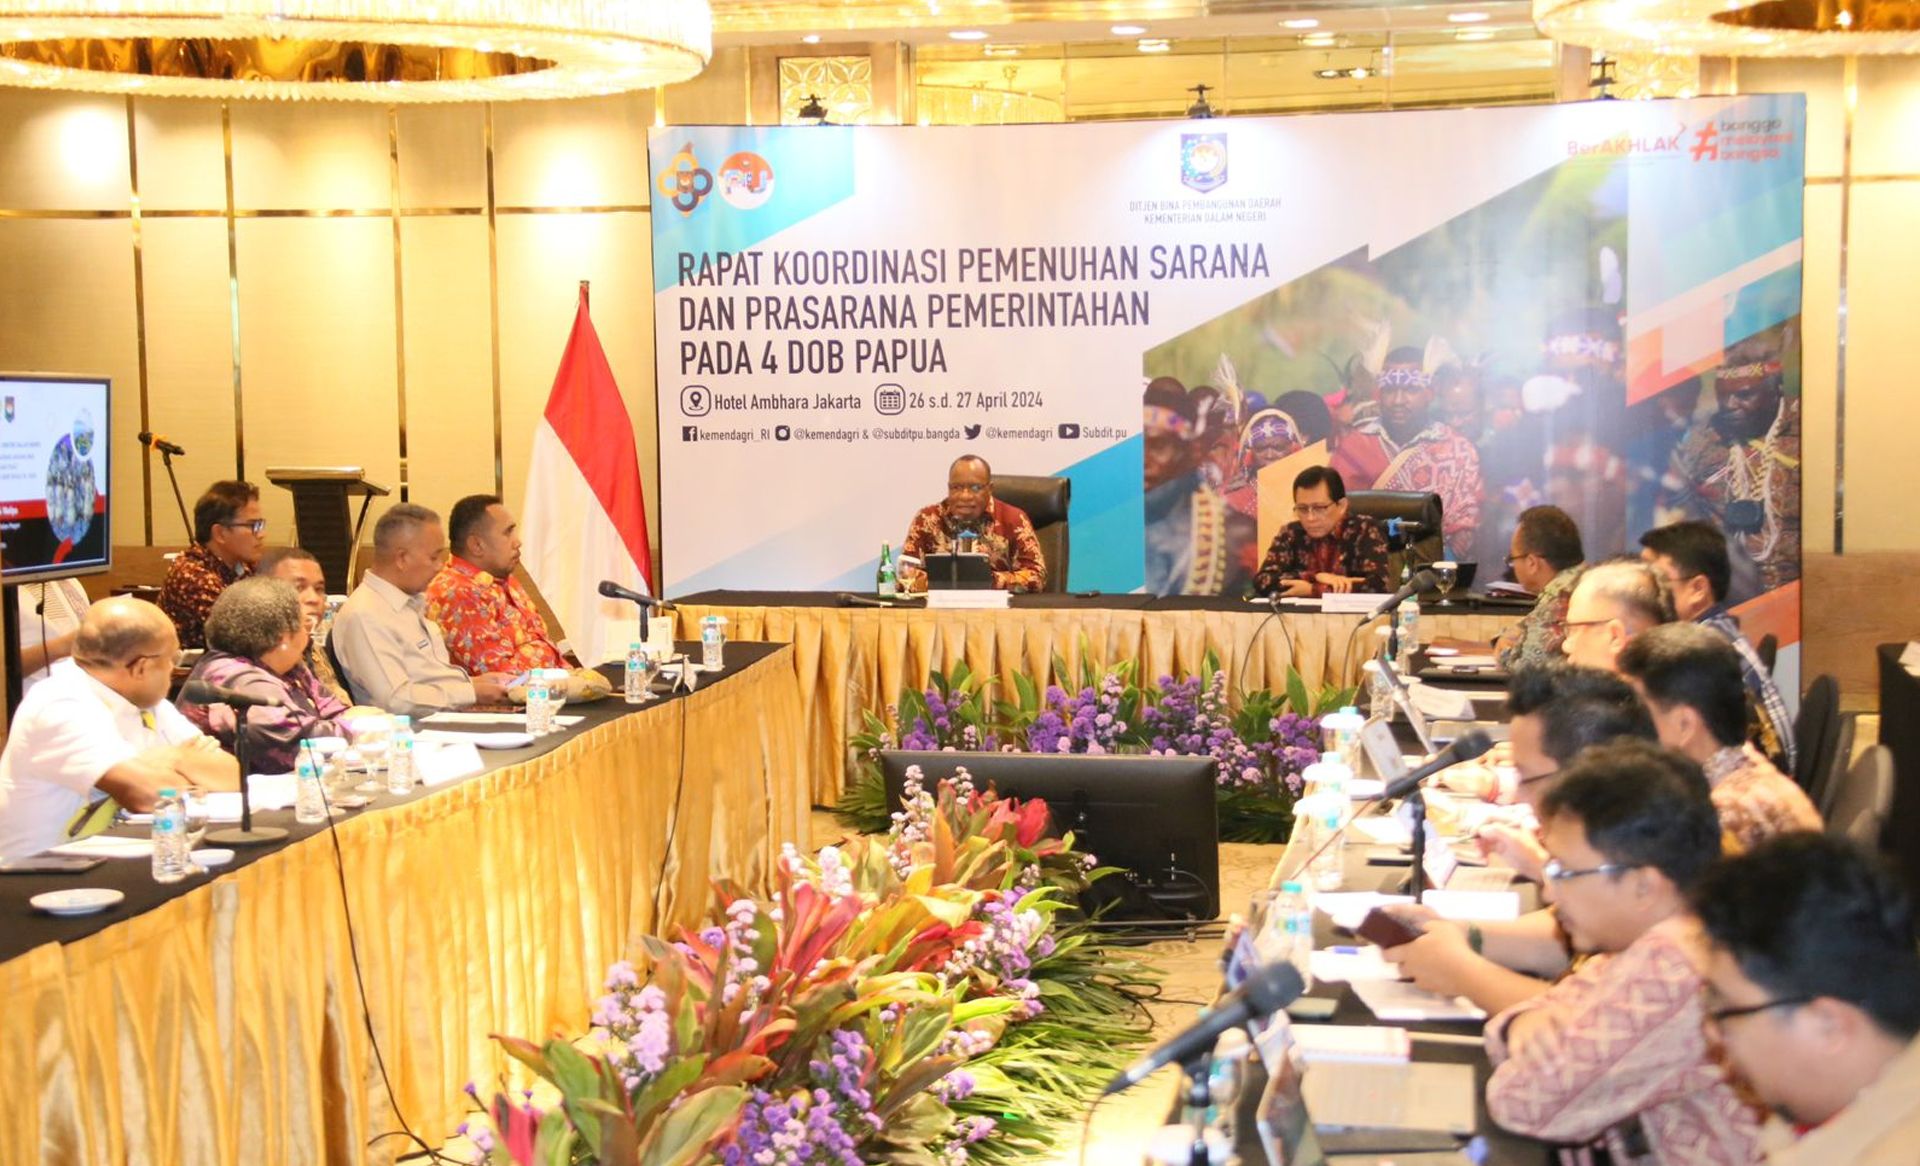 Wamendagri John Wempi Wetipo saat memberi arahan pada Rapat Koordinasi Pemenuhan Sarana dan Prasarana Pemerintahan pada 4 DOB Papua di Hotel Ambhara, Jakarta, Jumat 26 April 2024